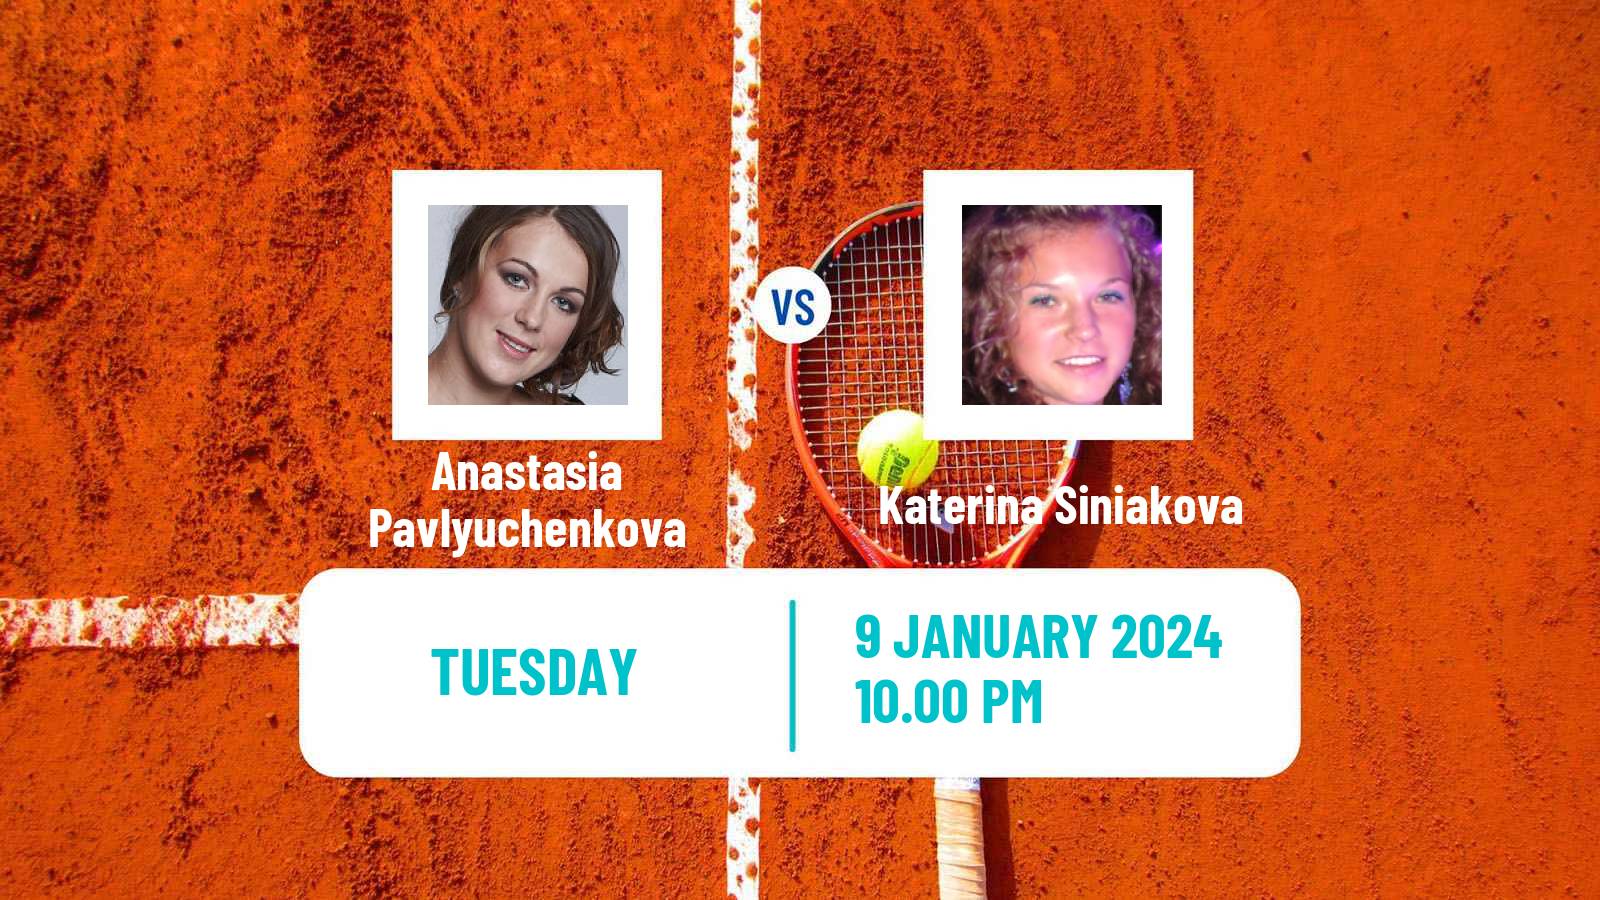 Tennis WTA Adelaide Anastasia Pavlyuchenkova - Katerina Siniakova